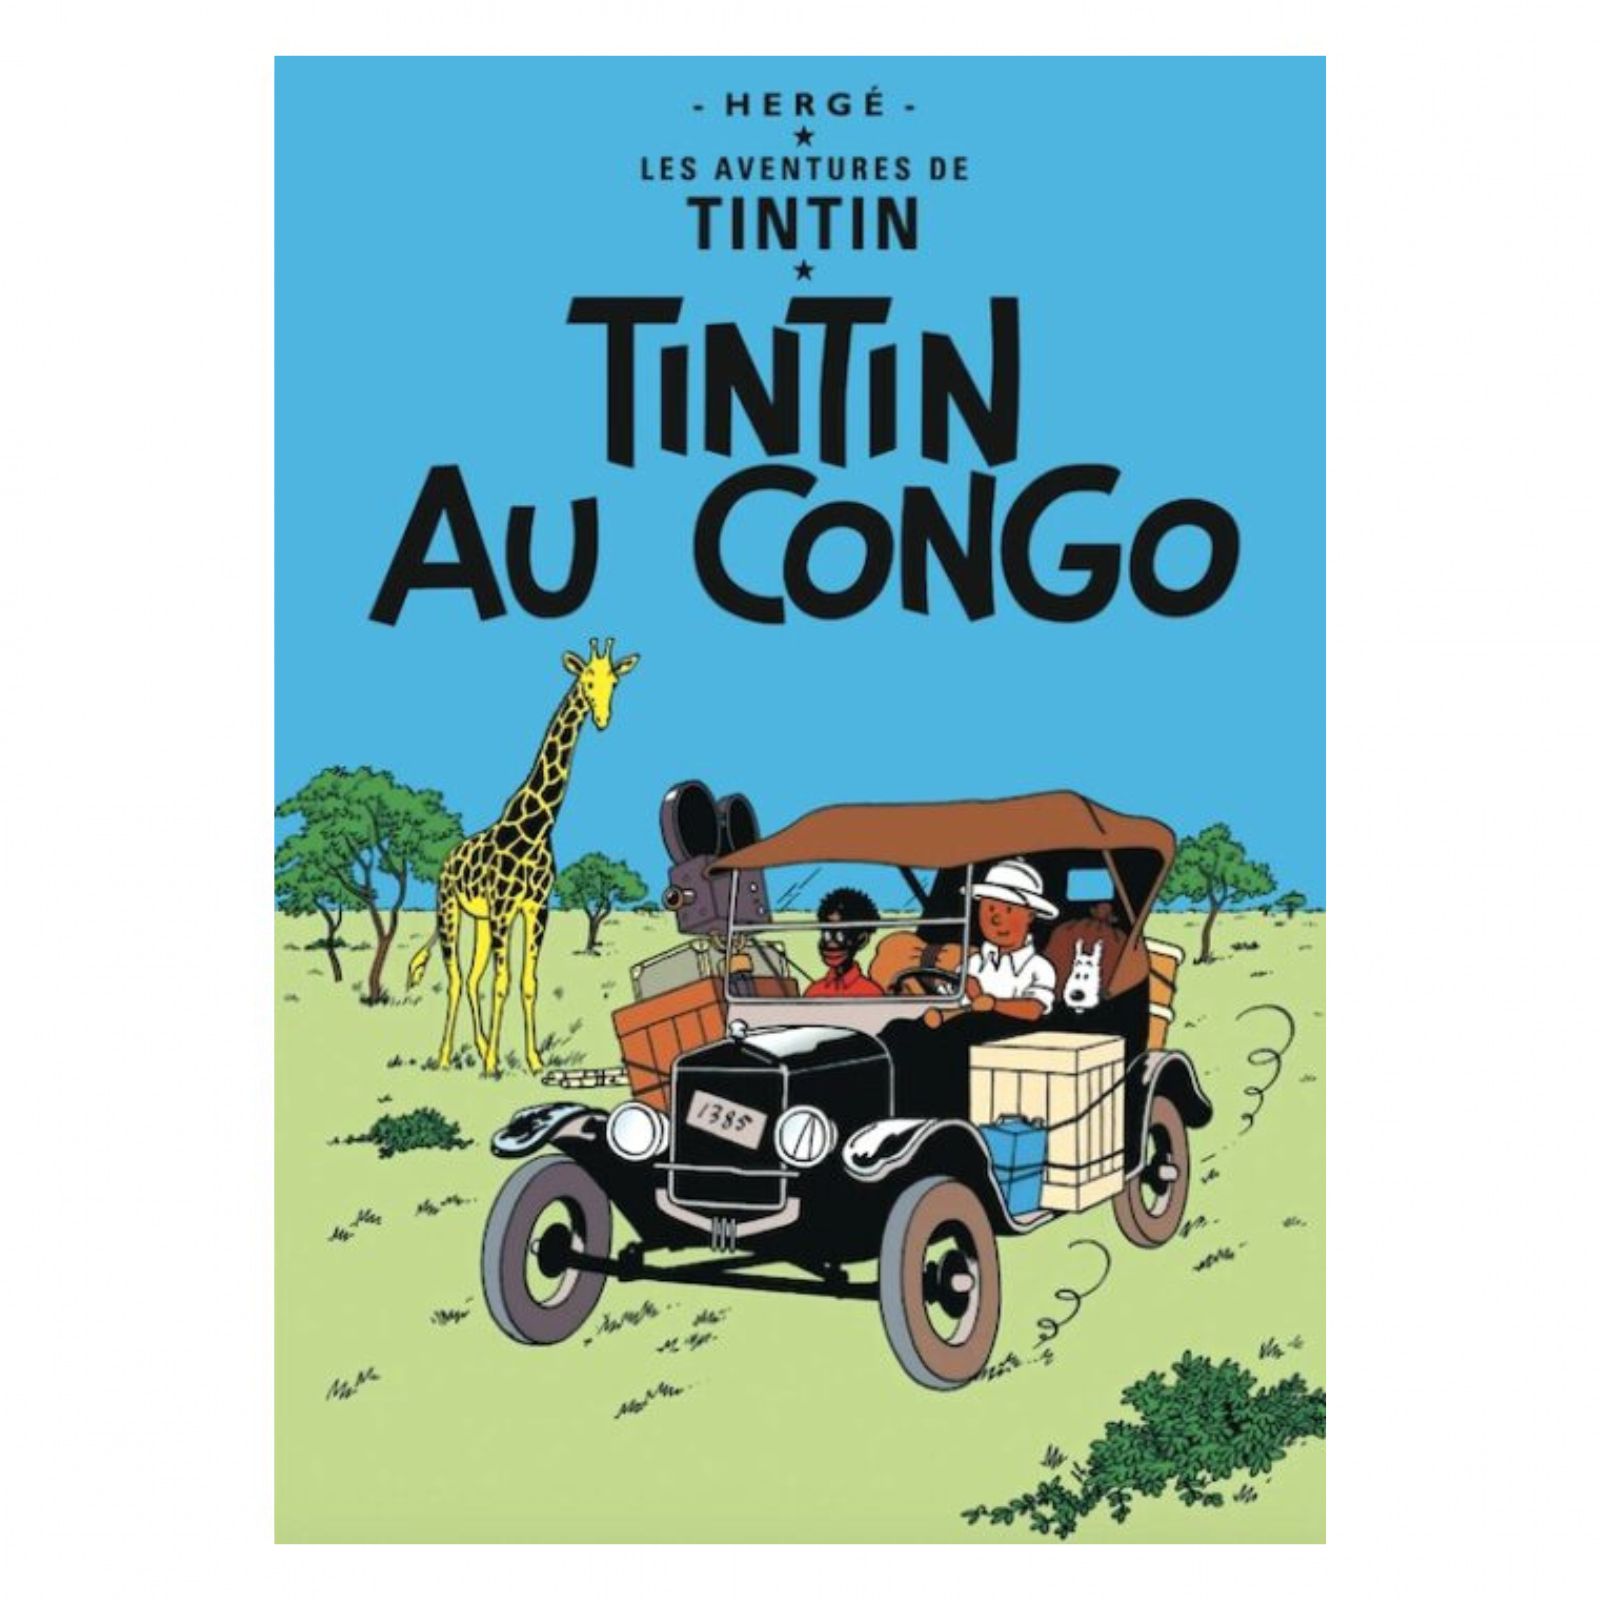 Affiche Tintin Objectif Lune – Montréal Images